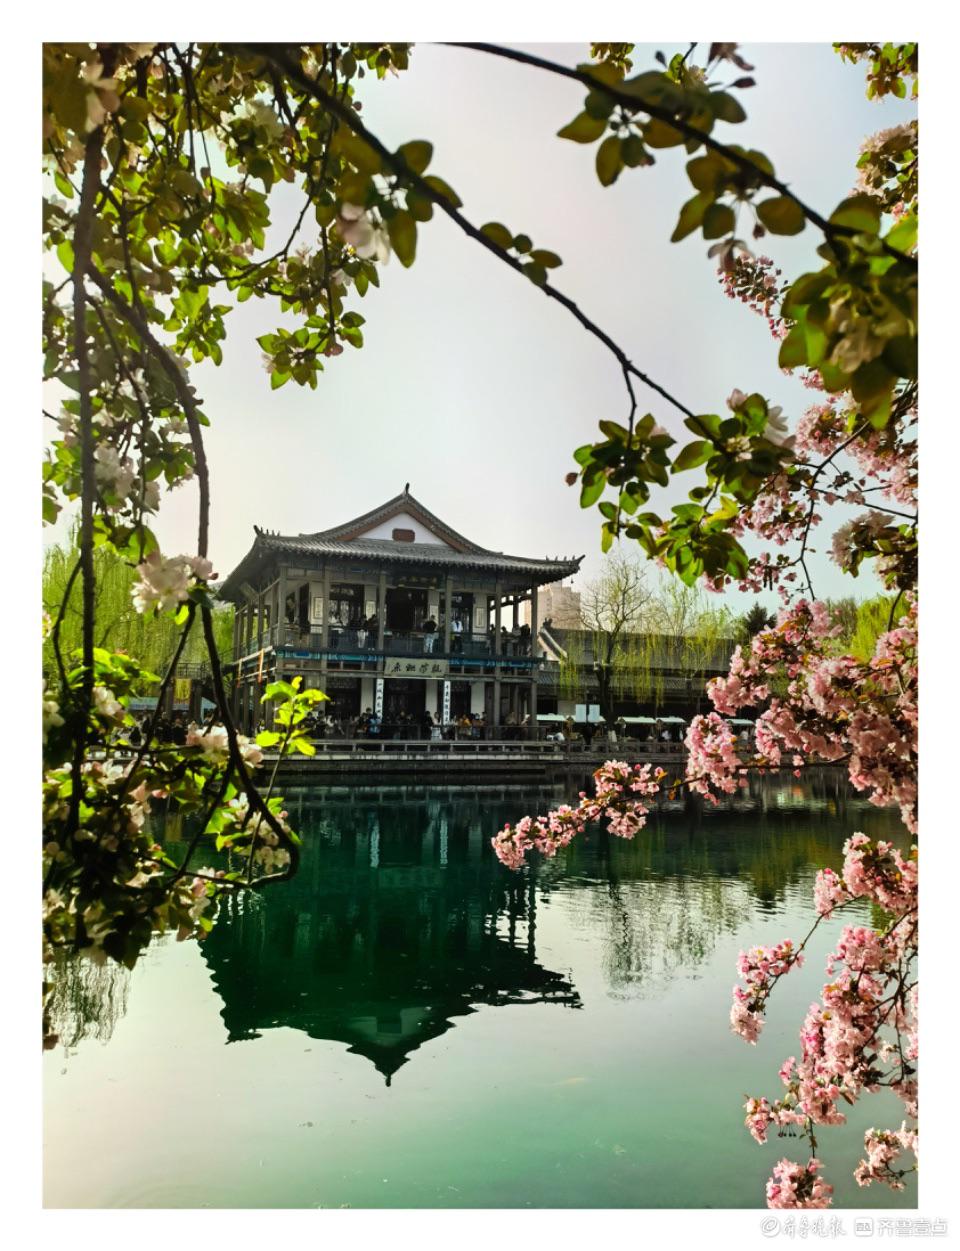 春暖花开游人如织，热闹的济南五龙潭公园